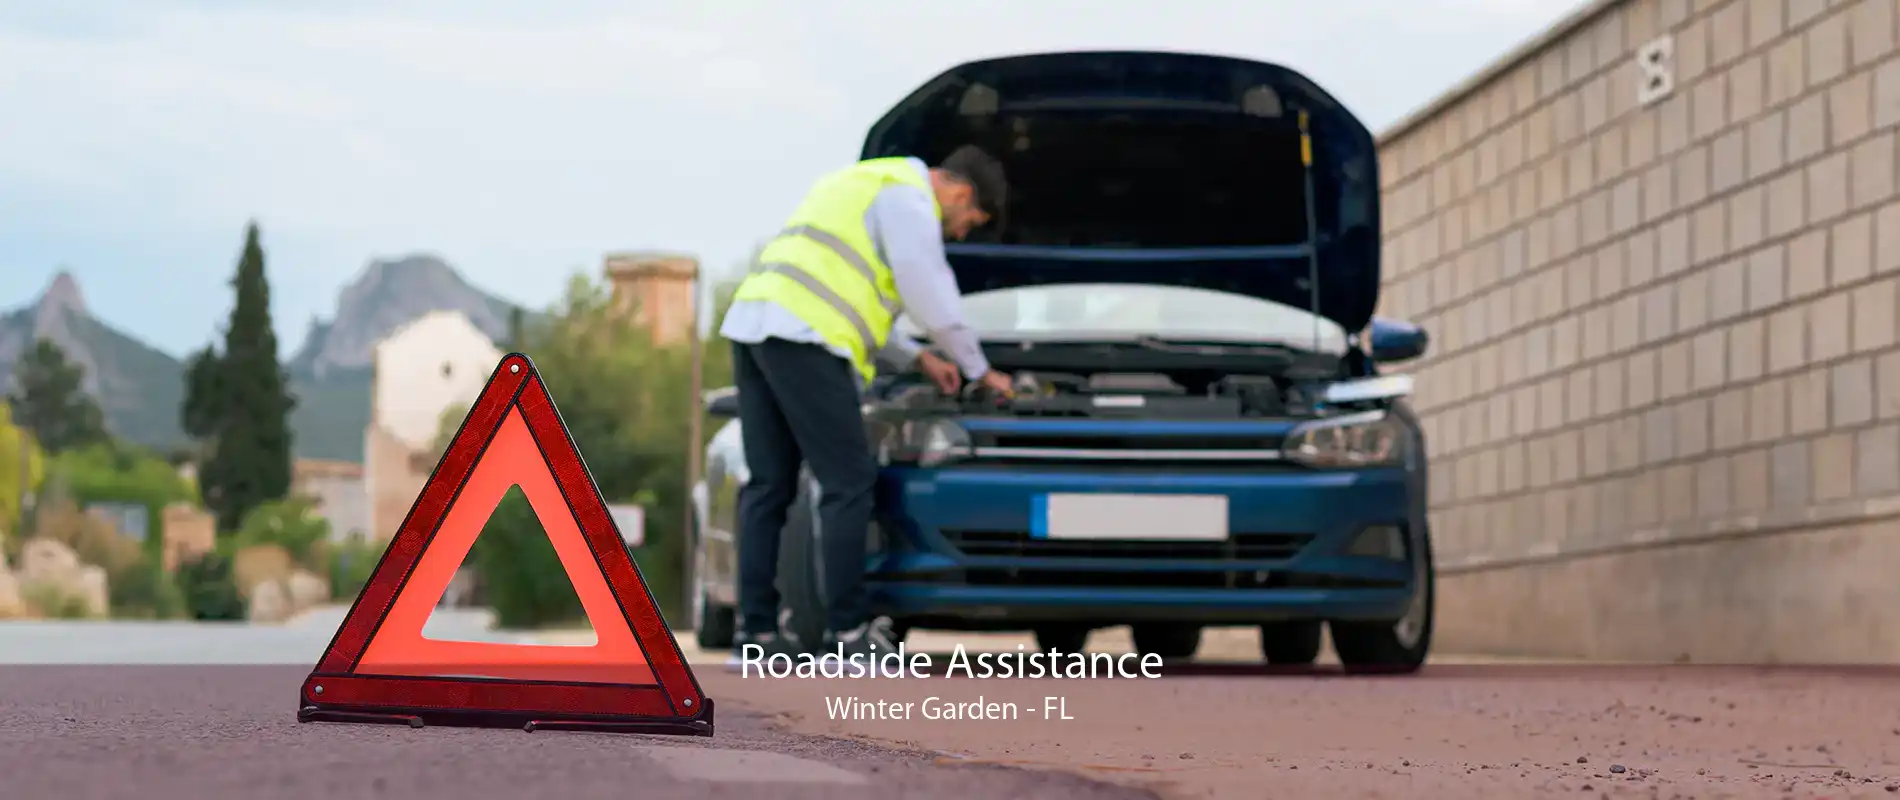 Roadside Assistance Winter Garden - FL